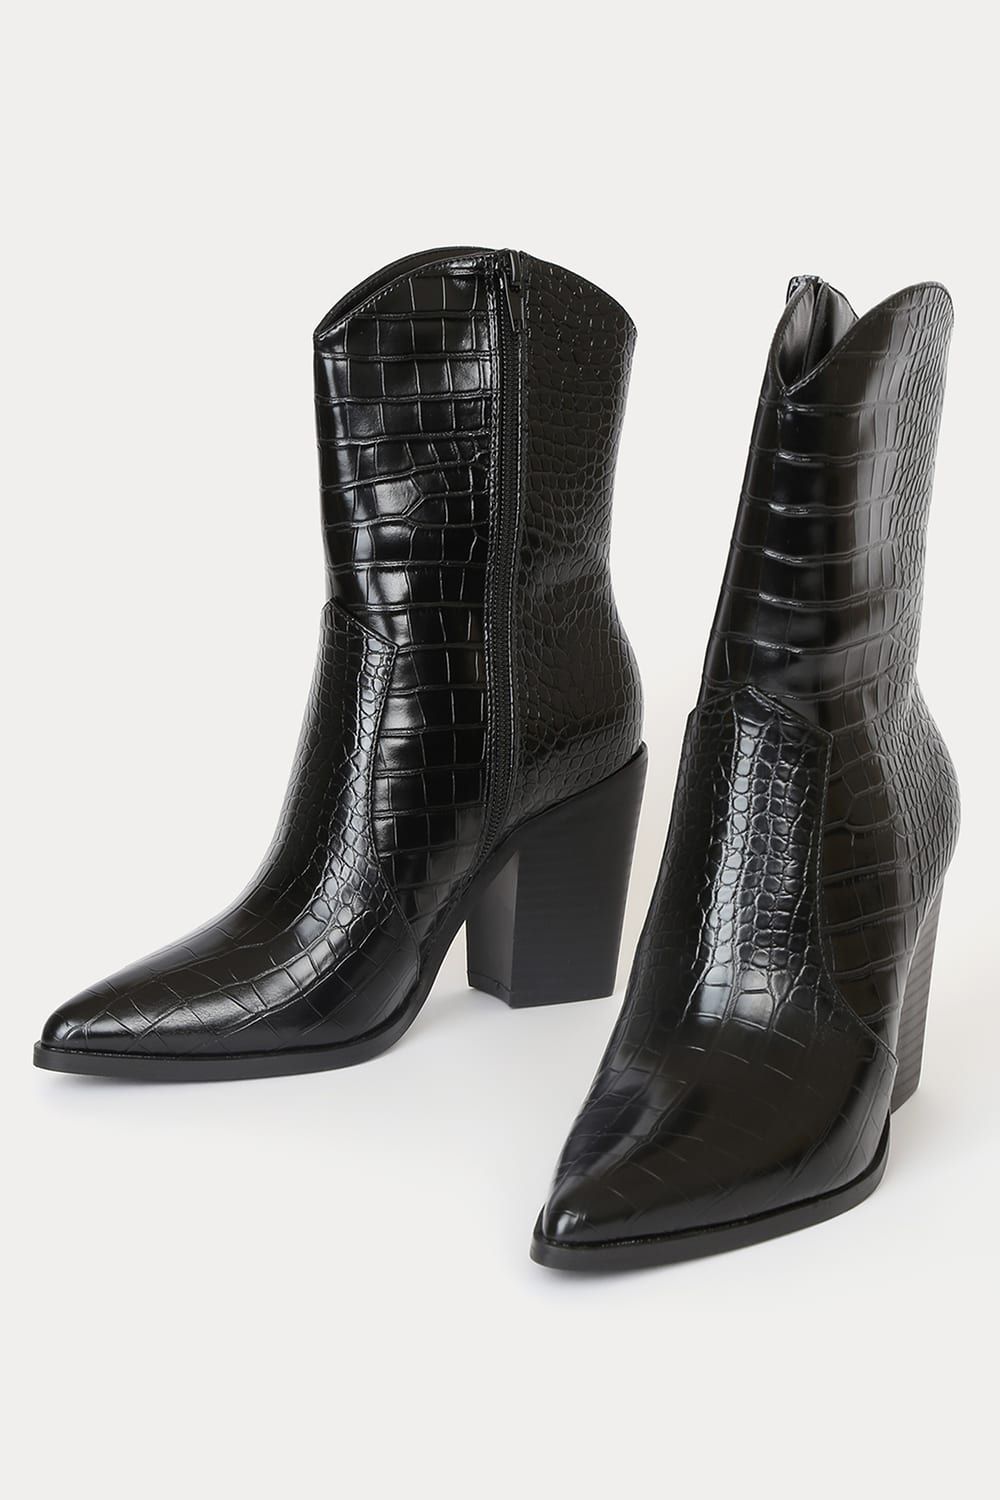 Eleora Black Crocodile-Embossed Mid-Calf High Heel Boots | Lulus (US)